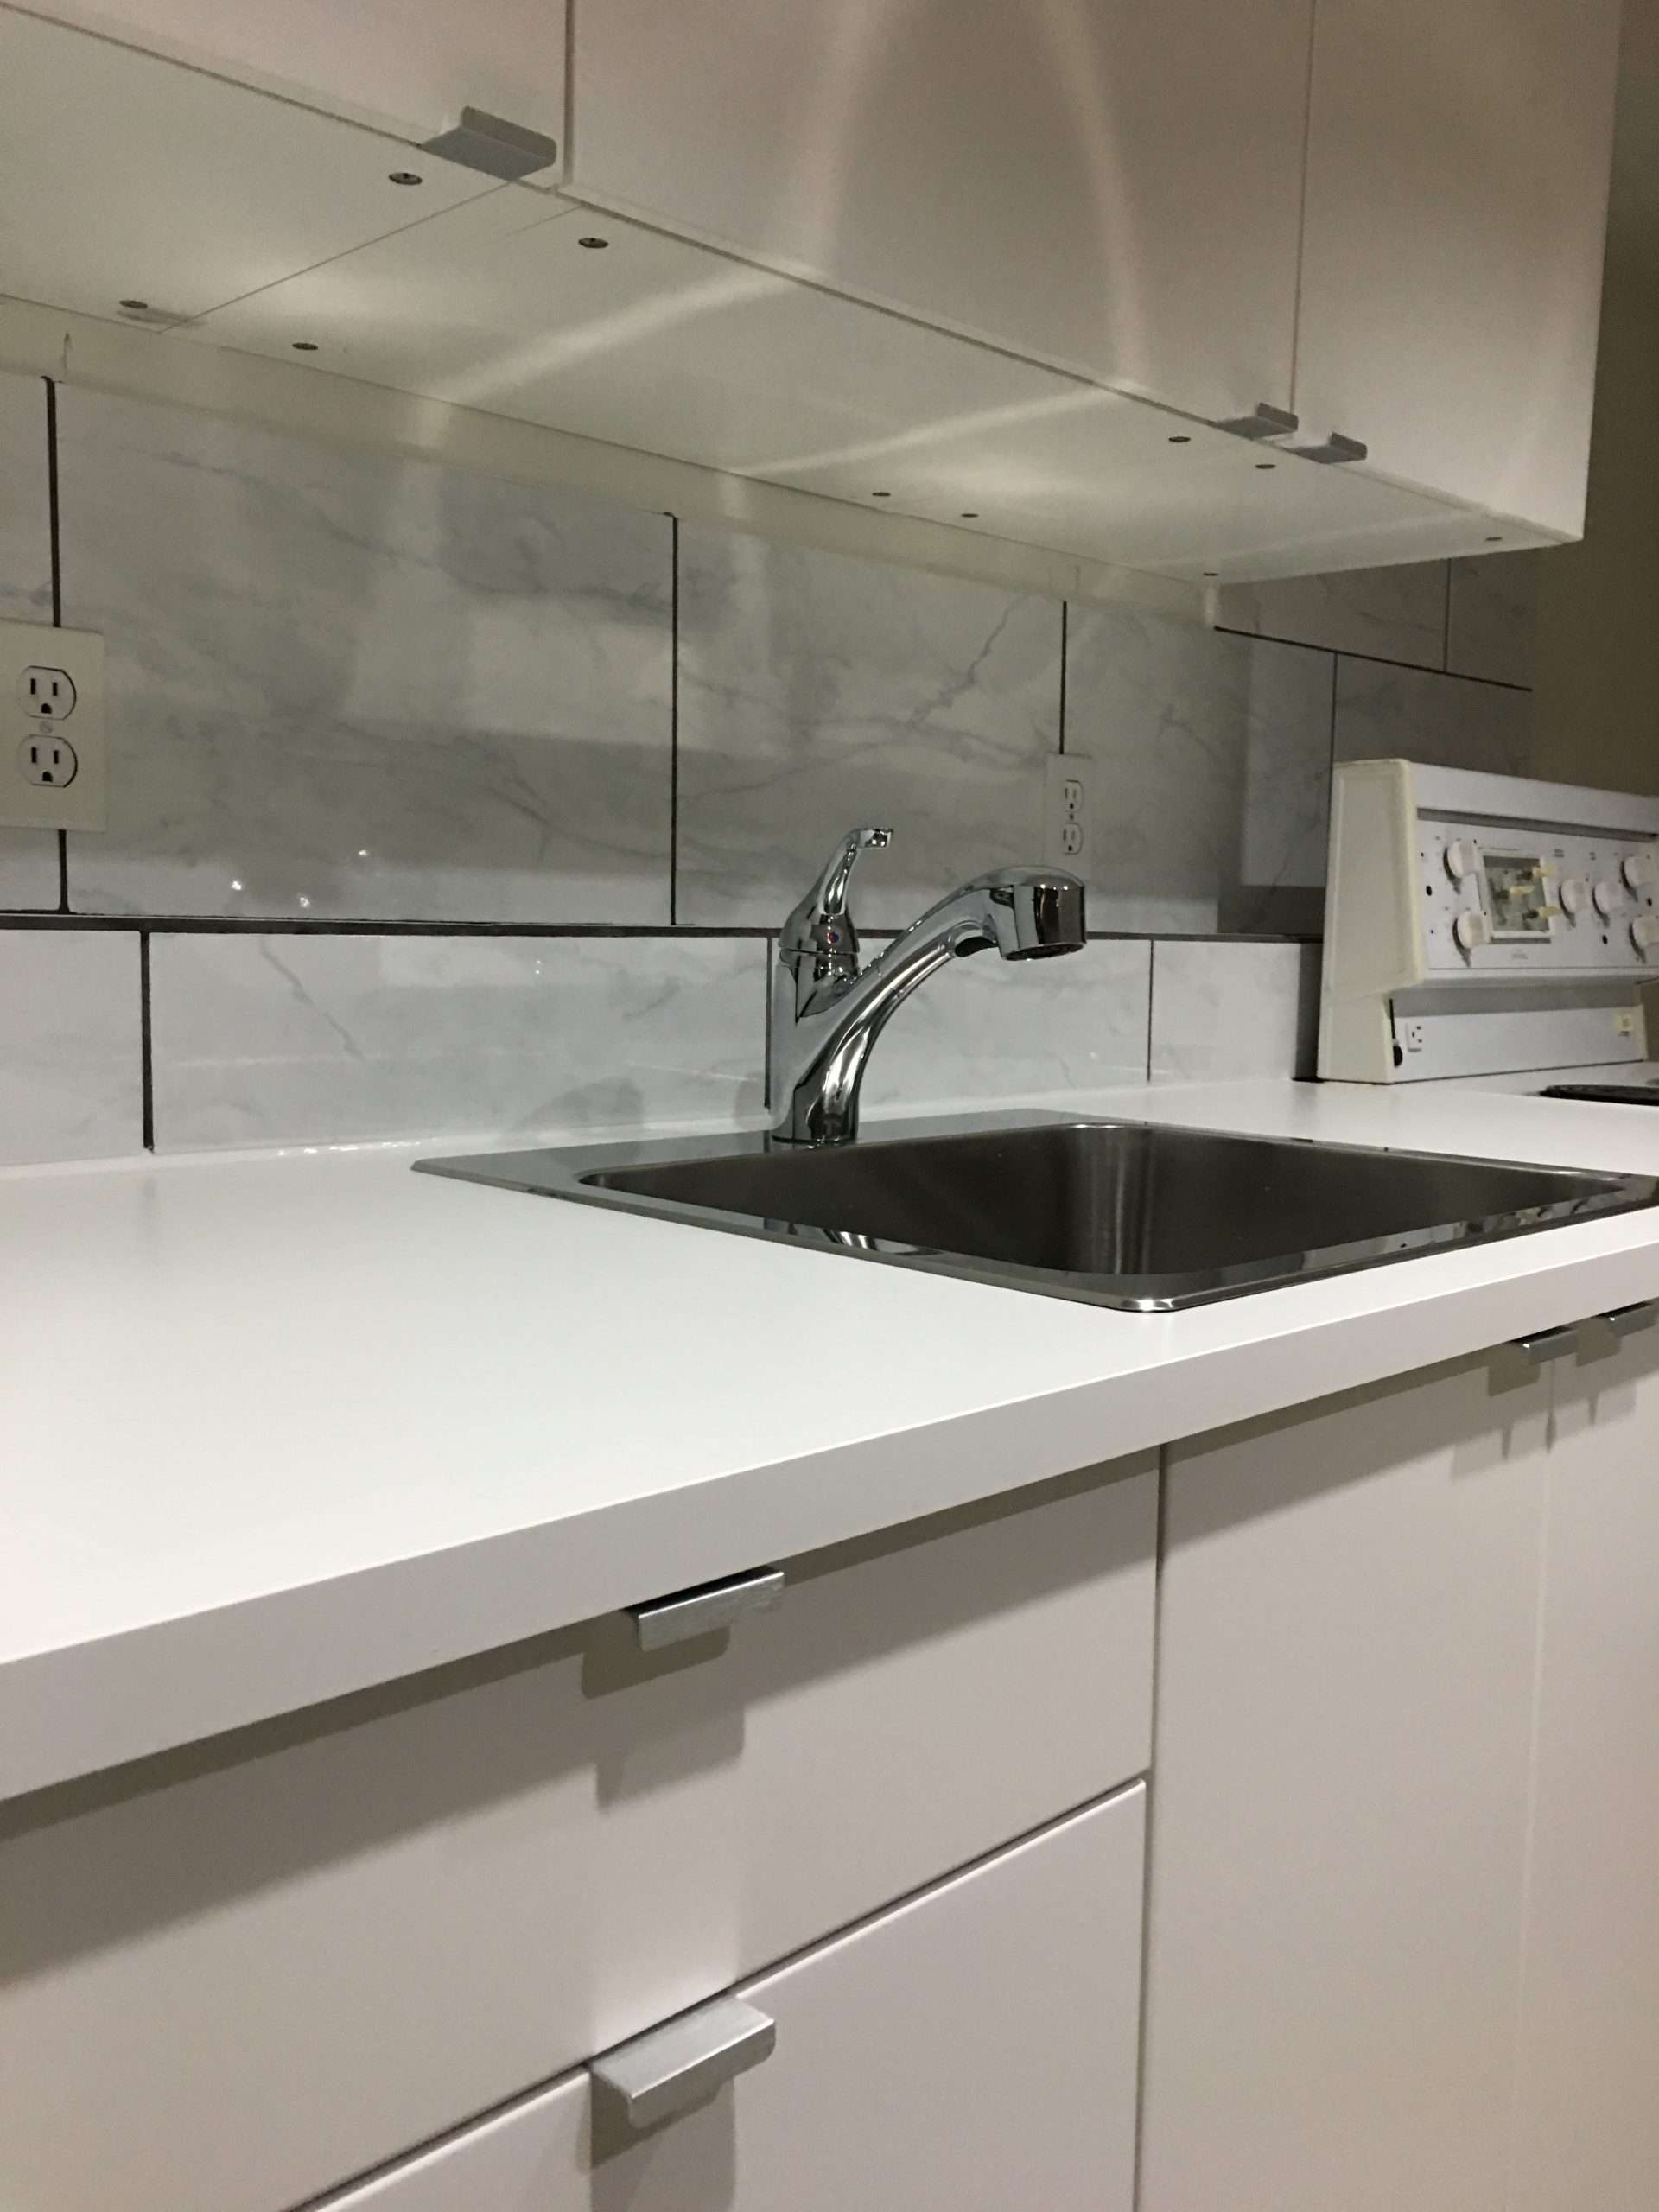 Sink in kitchen renovation